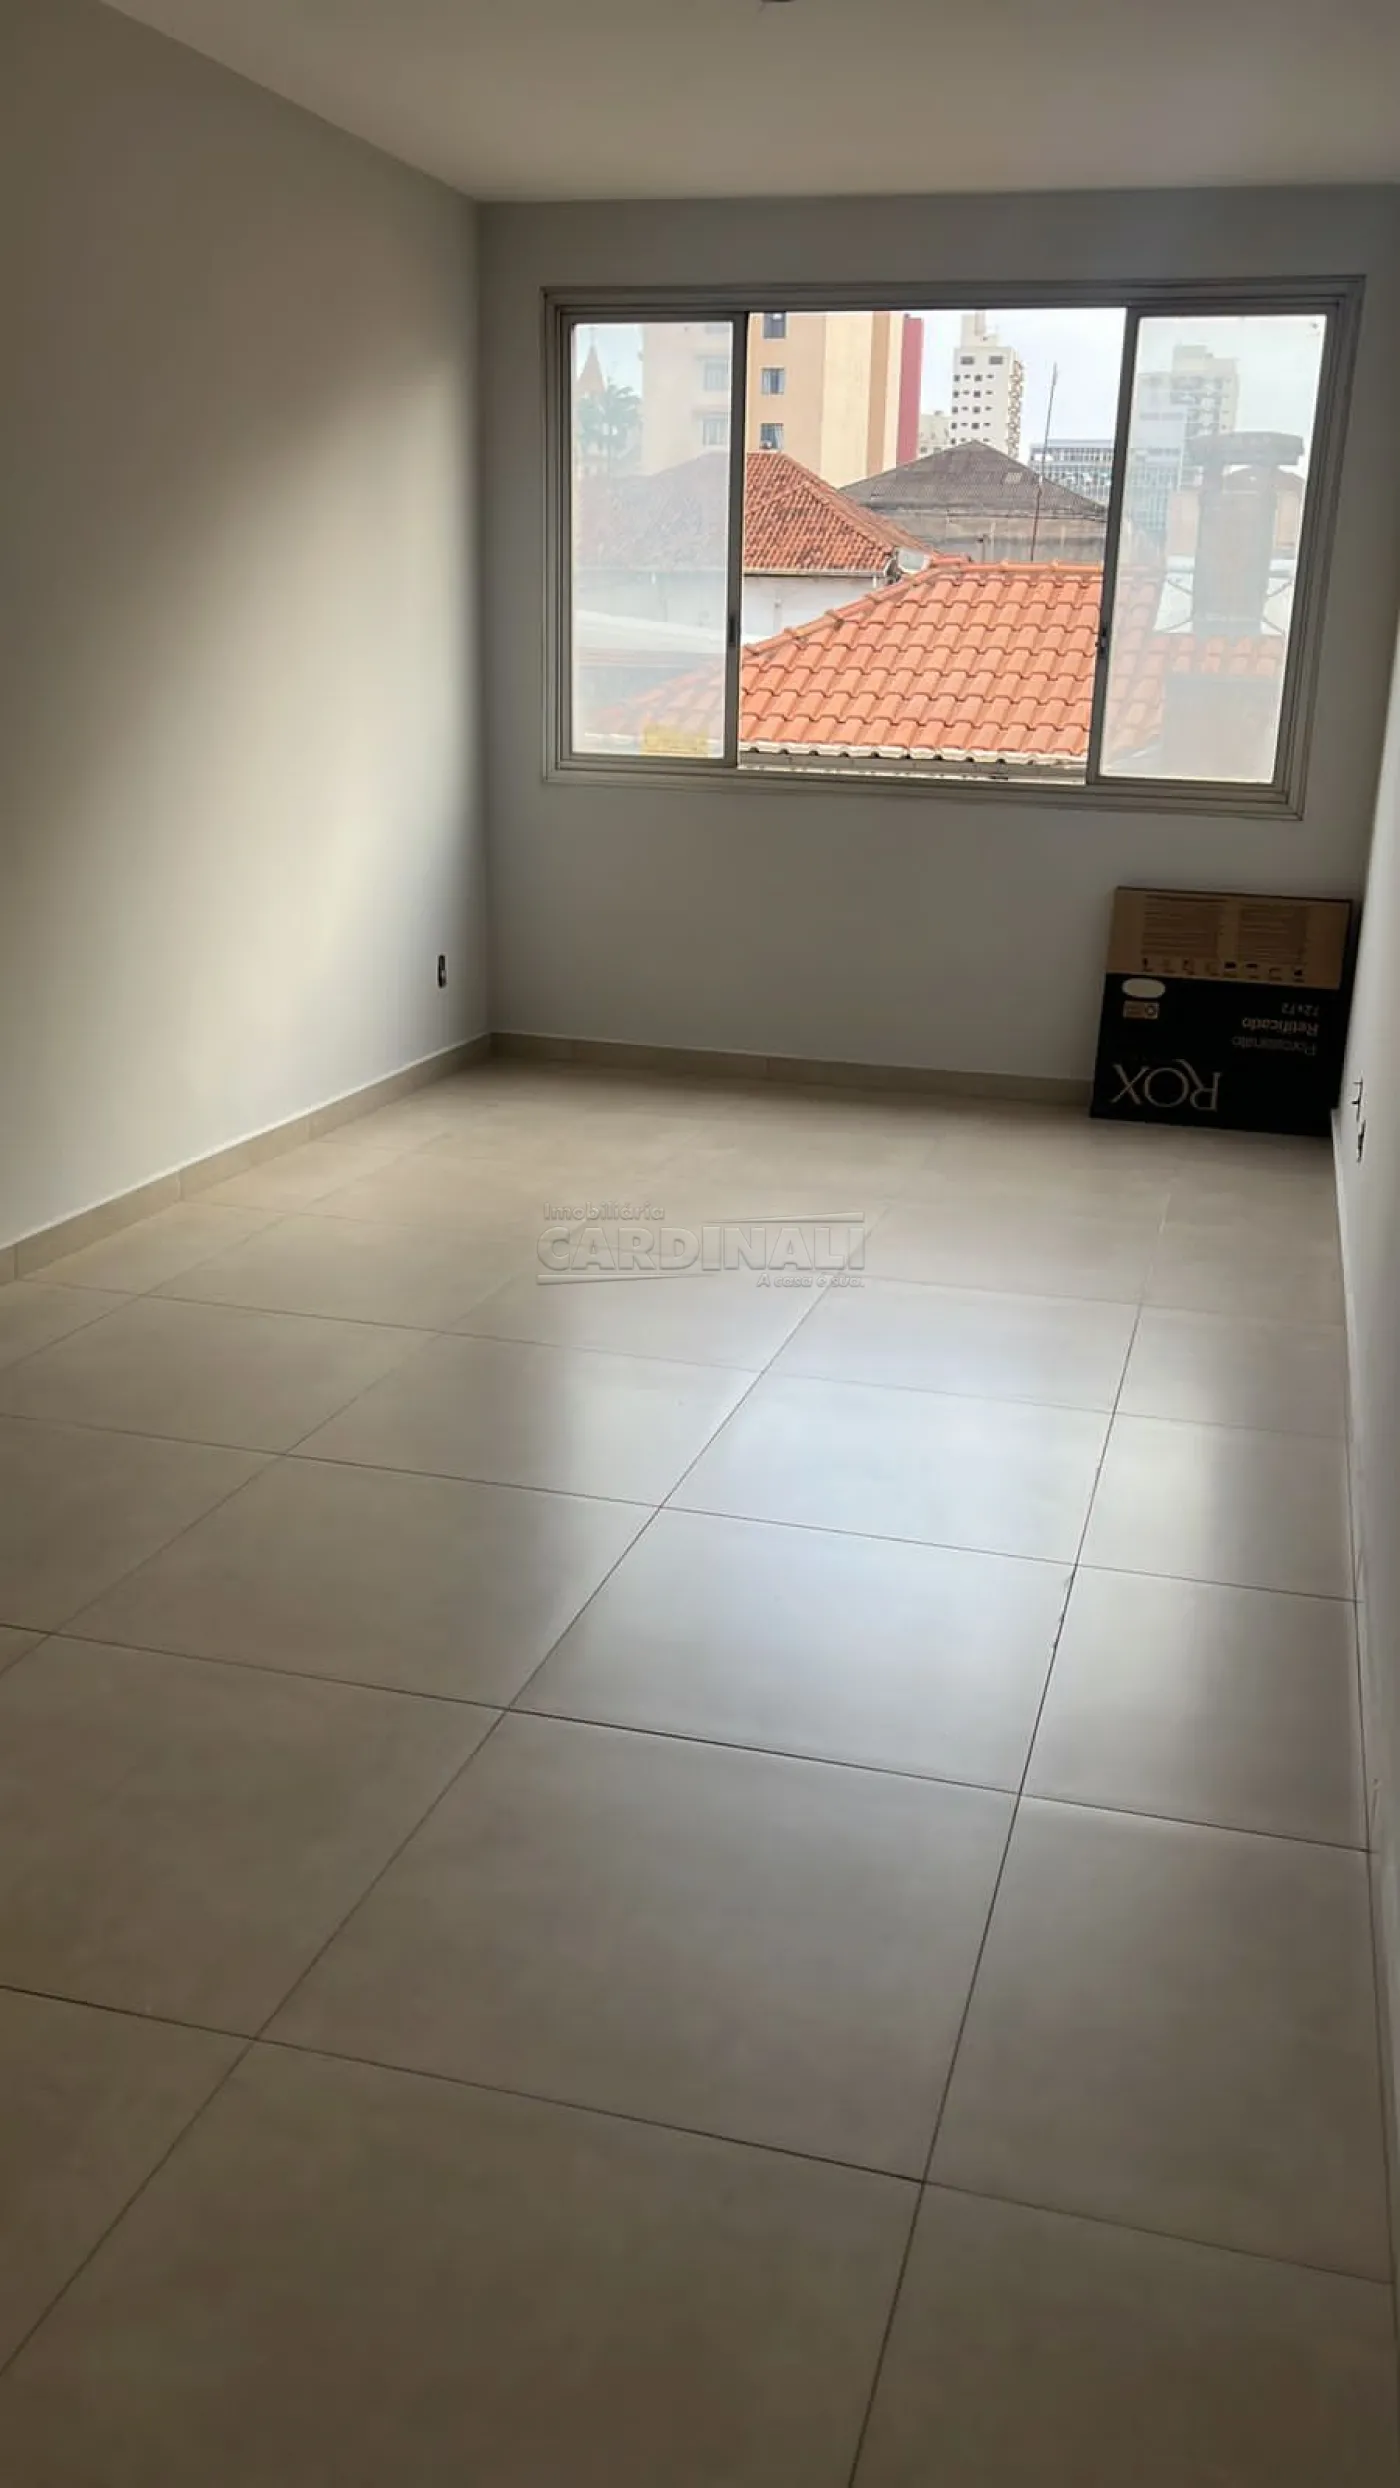 Apartamento / Padrão em Araraquara , Comprar por R$230.000,00